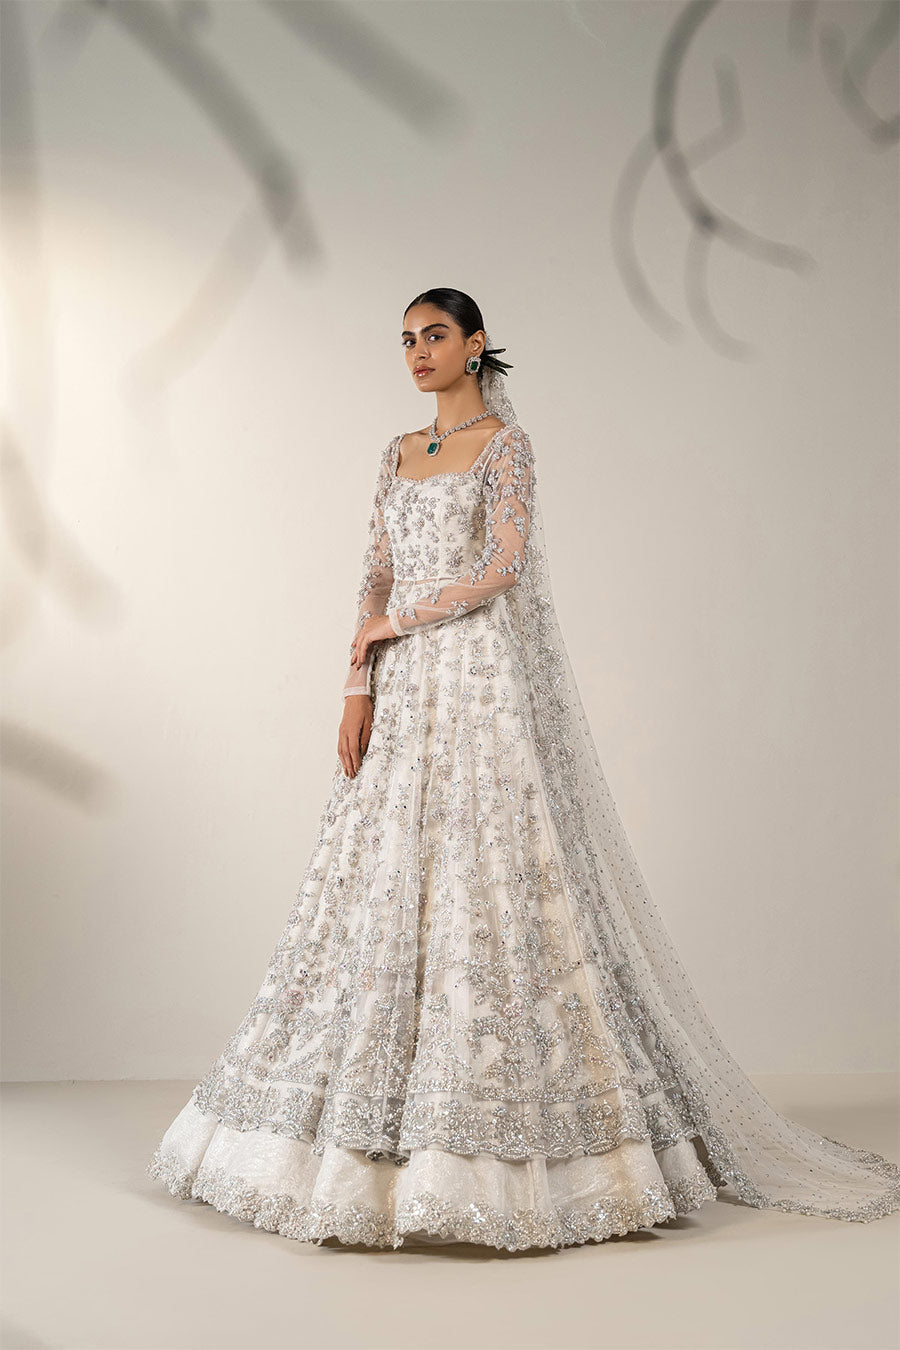 Buy Pakistani Wedding Dress in Net Kameez Trouser Dupatta Style – Nameera  by Farooq